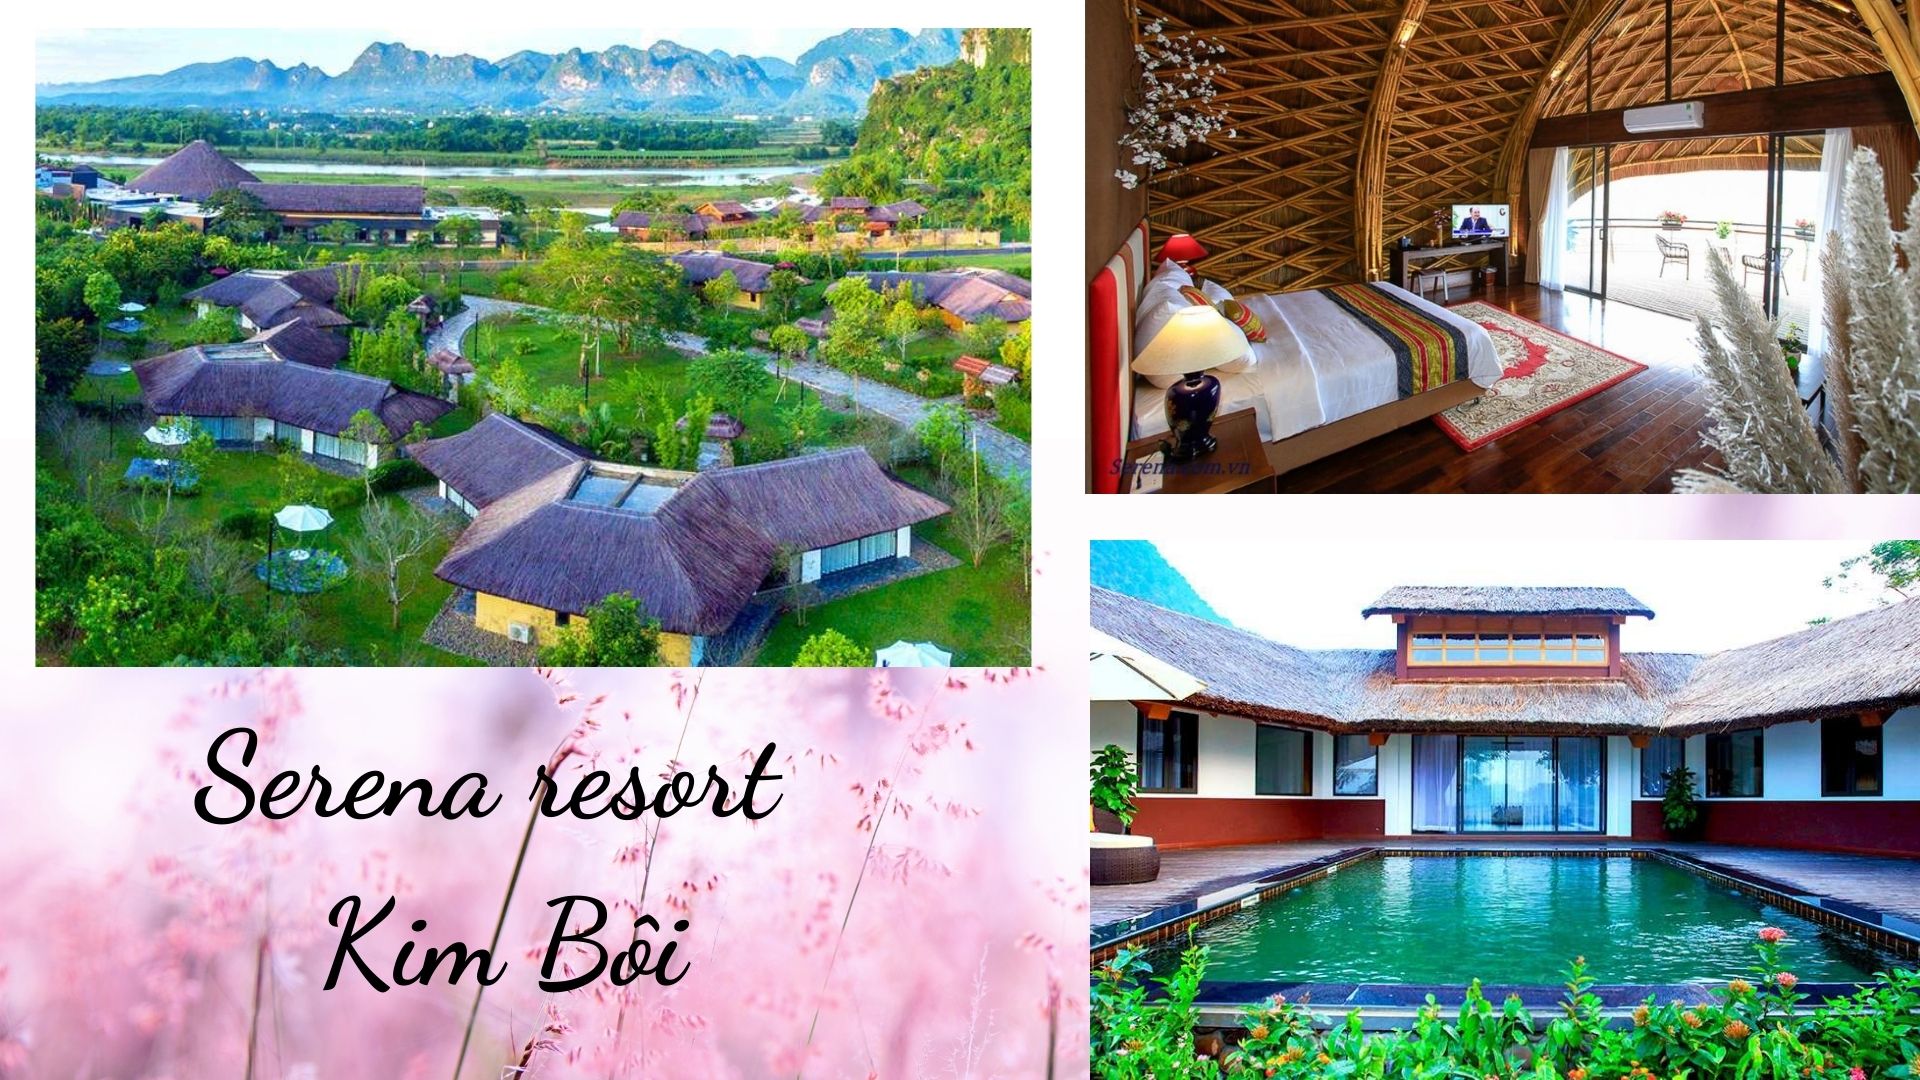 Top 20 Resort Hòa Bình giá rẻ view đẹp ở Lương Sơn, Kim Bôi, Mai Châu